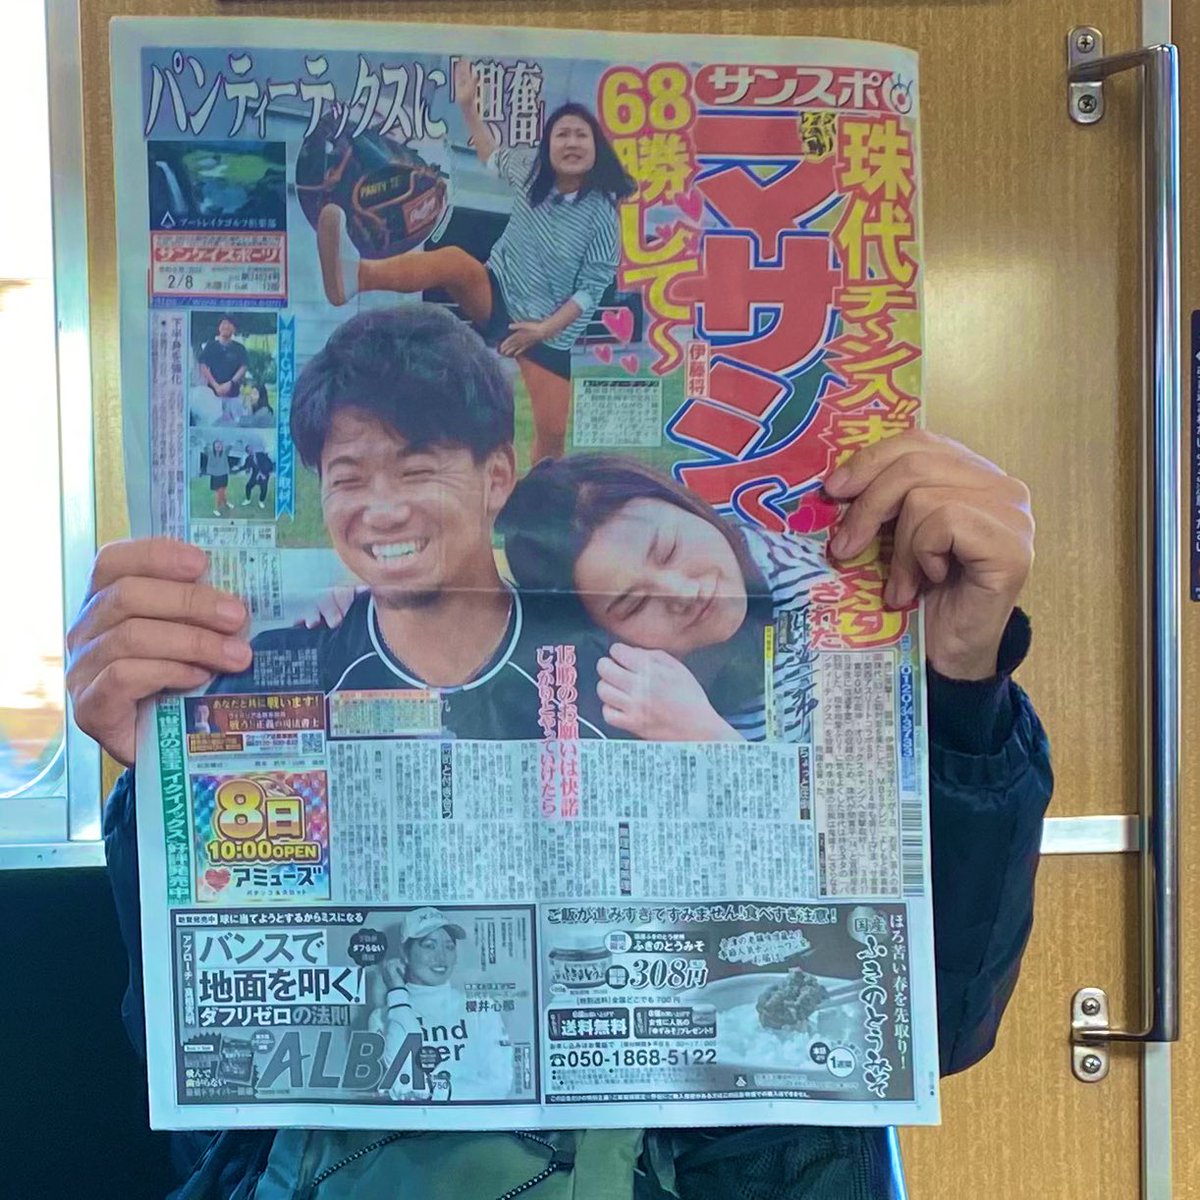 通勤電車中𝕏で伊藤将司と島田珠代姐さんの記事見て笑って顔上げたら目の前でサラリーマンがパンティーテックス全開でもう無理やったwwwwwwwwwwwwwww